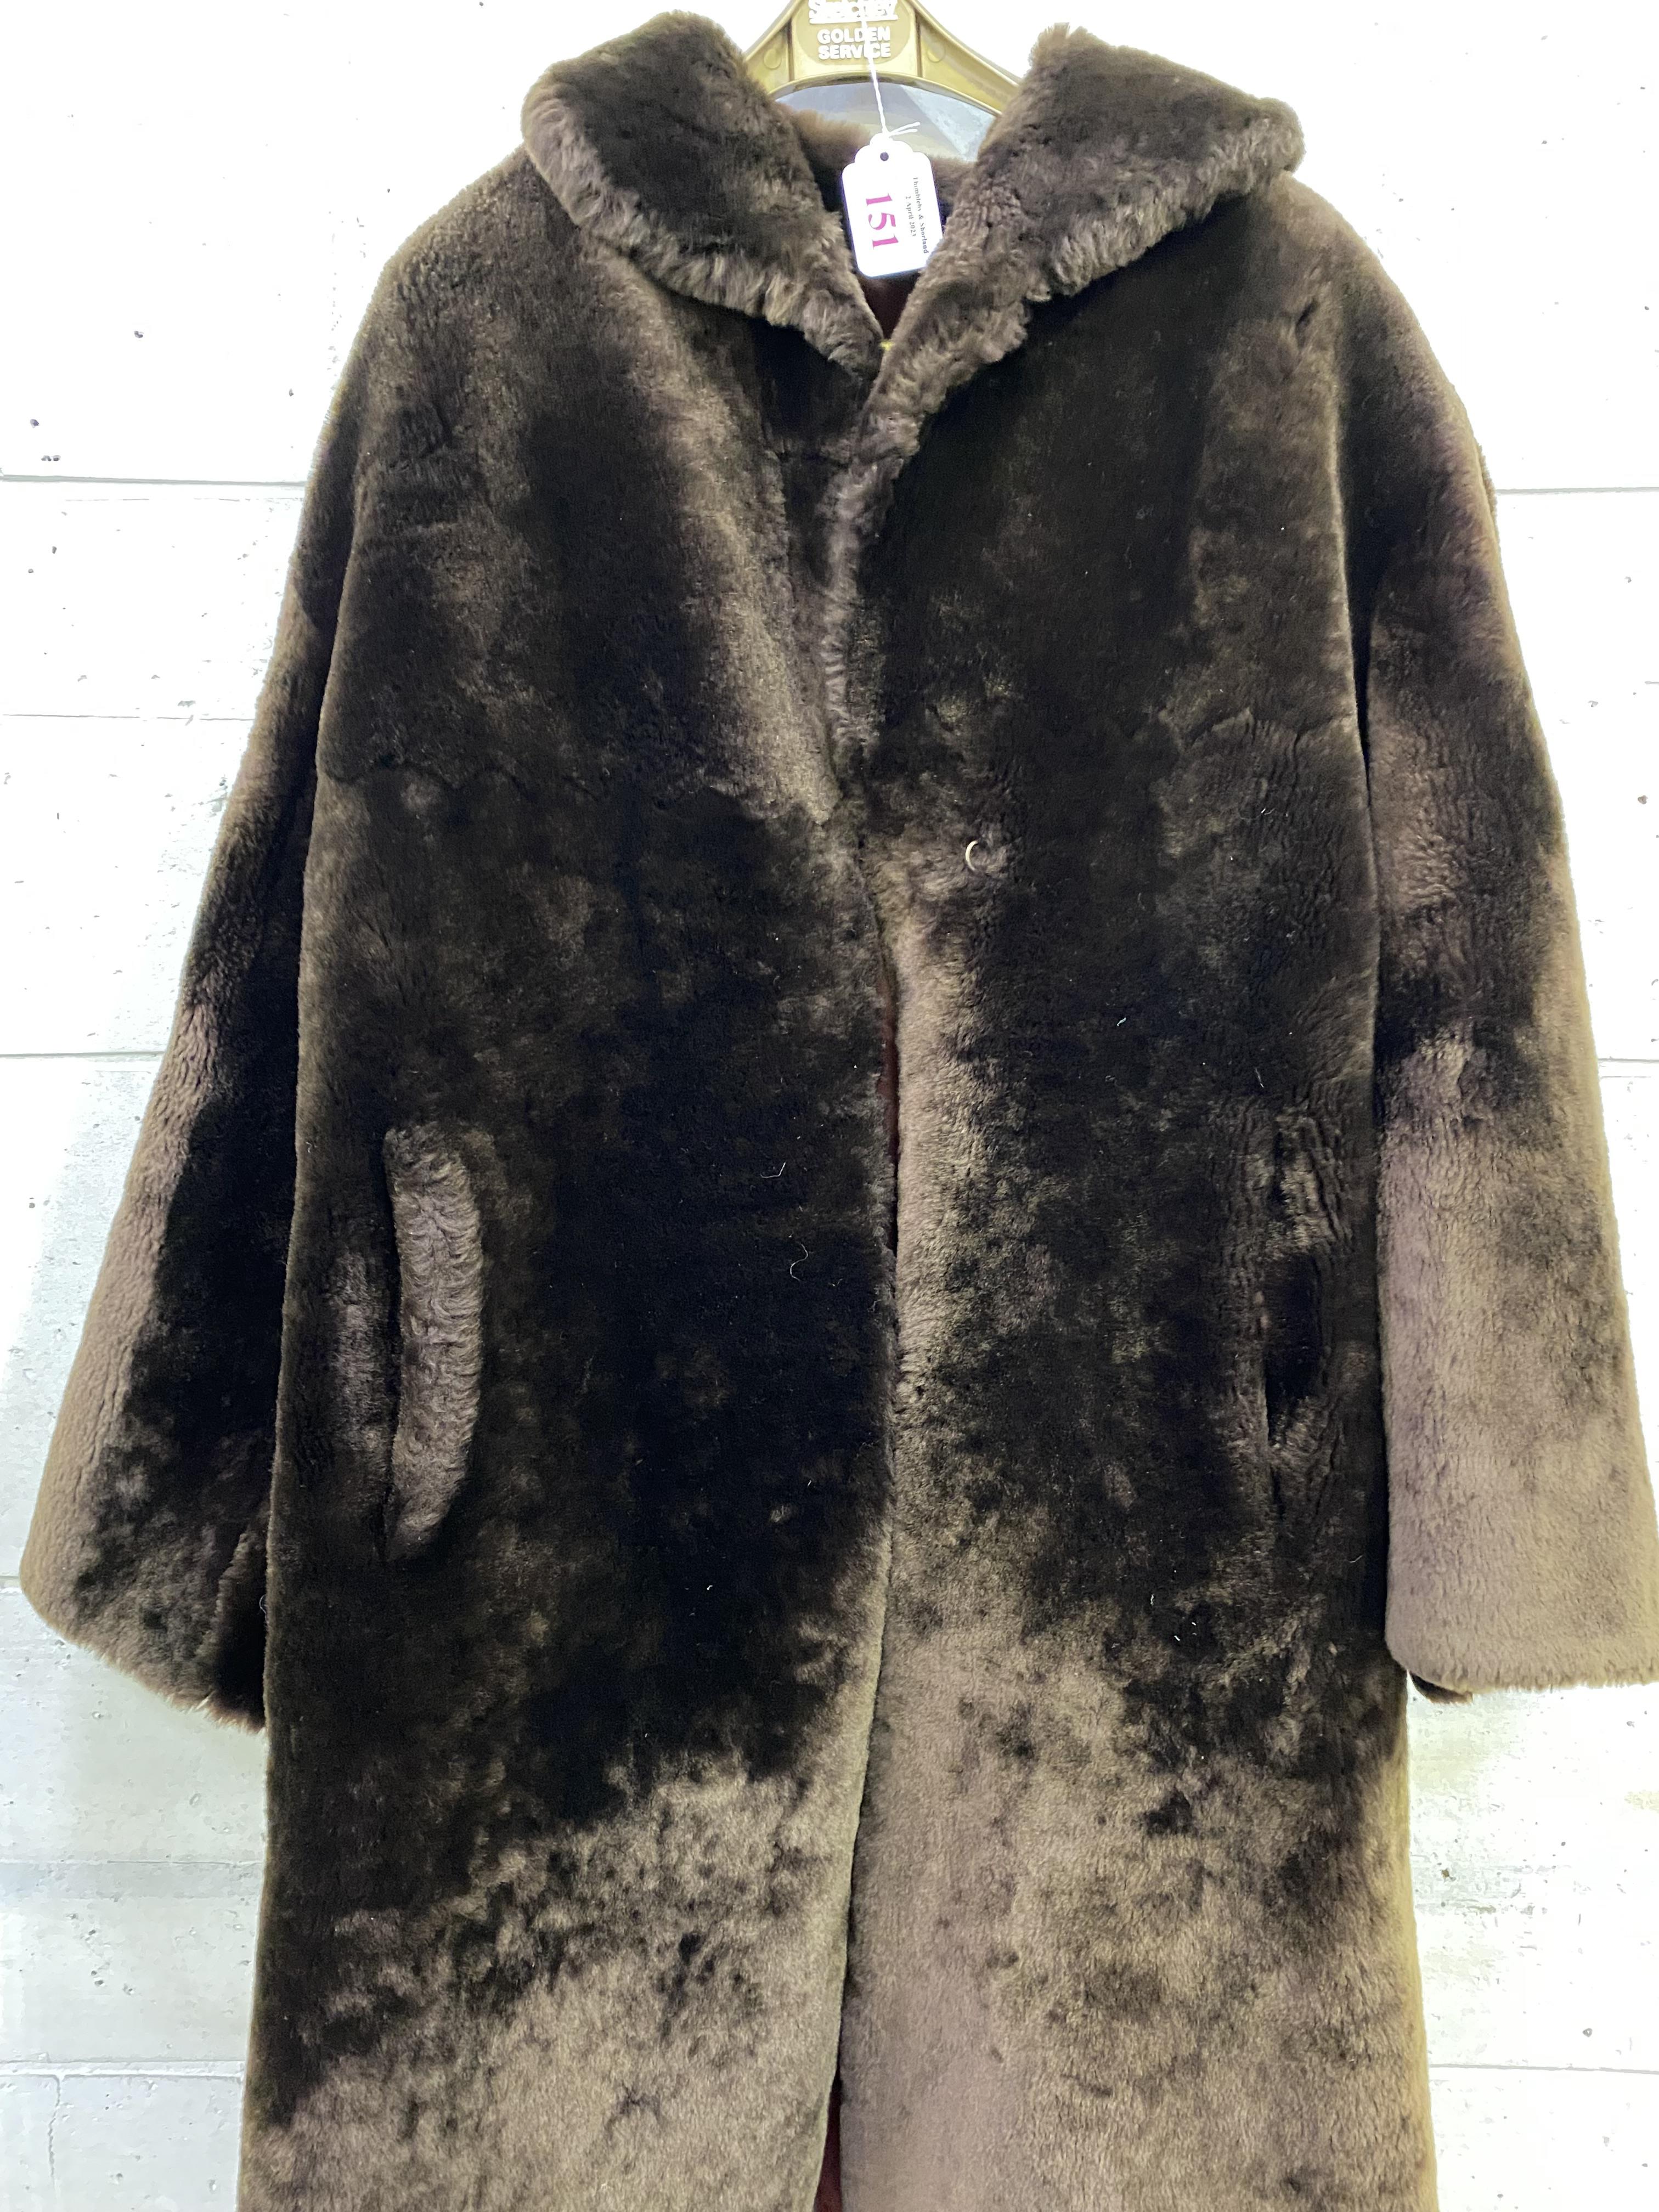 Full length bearskin coat - Image 2 of 5